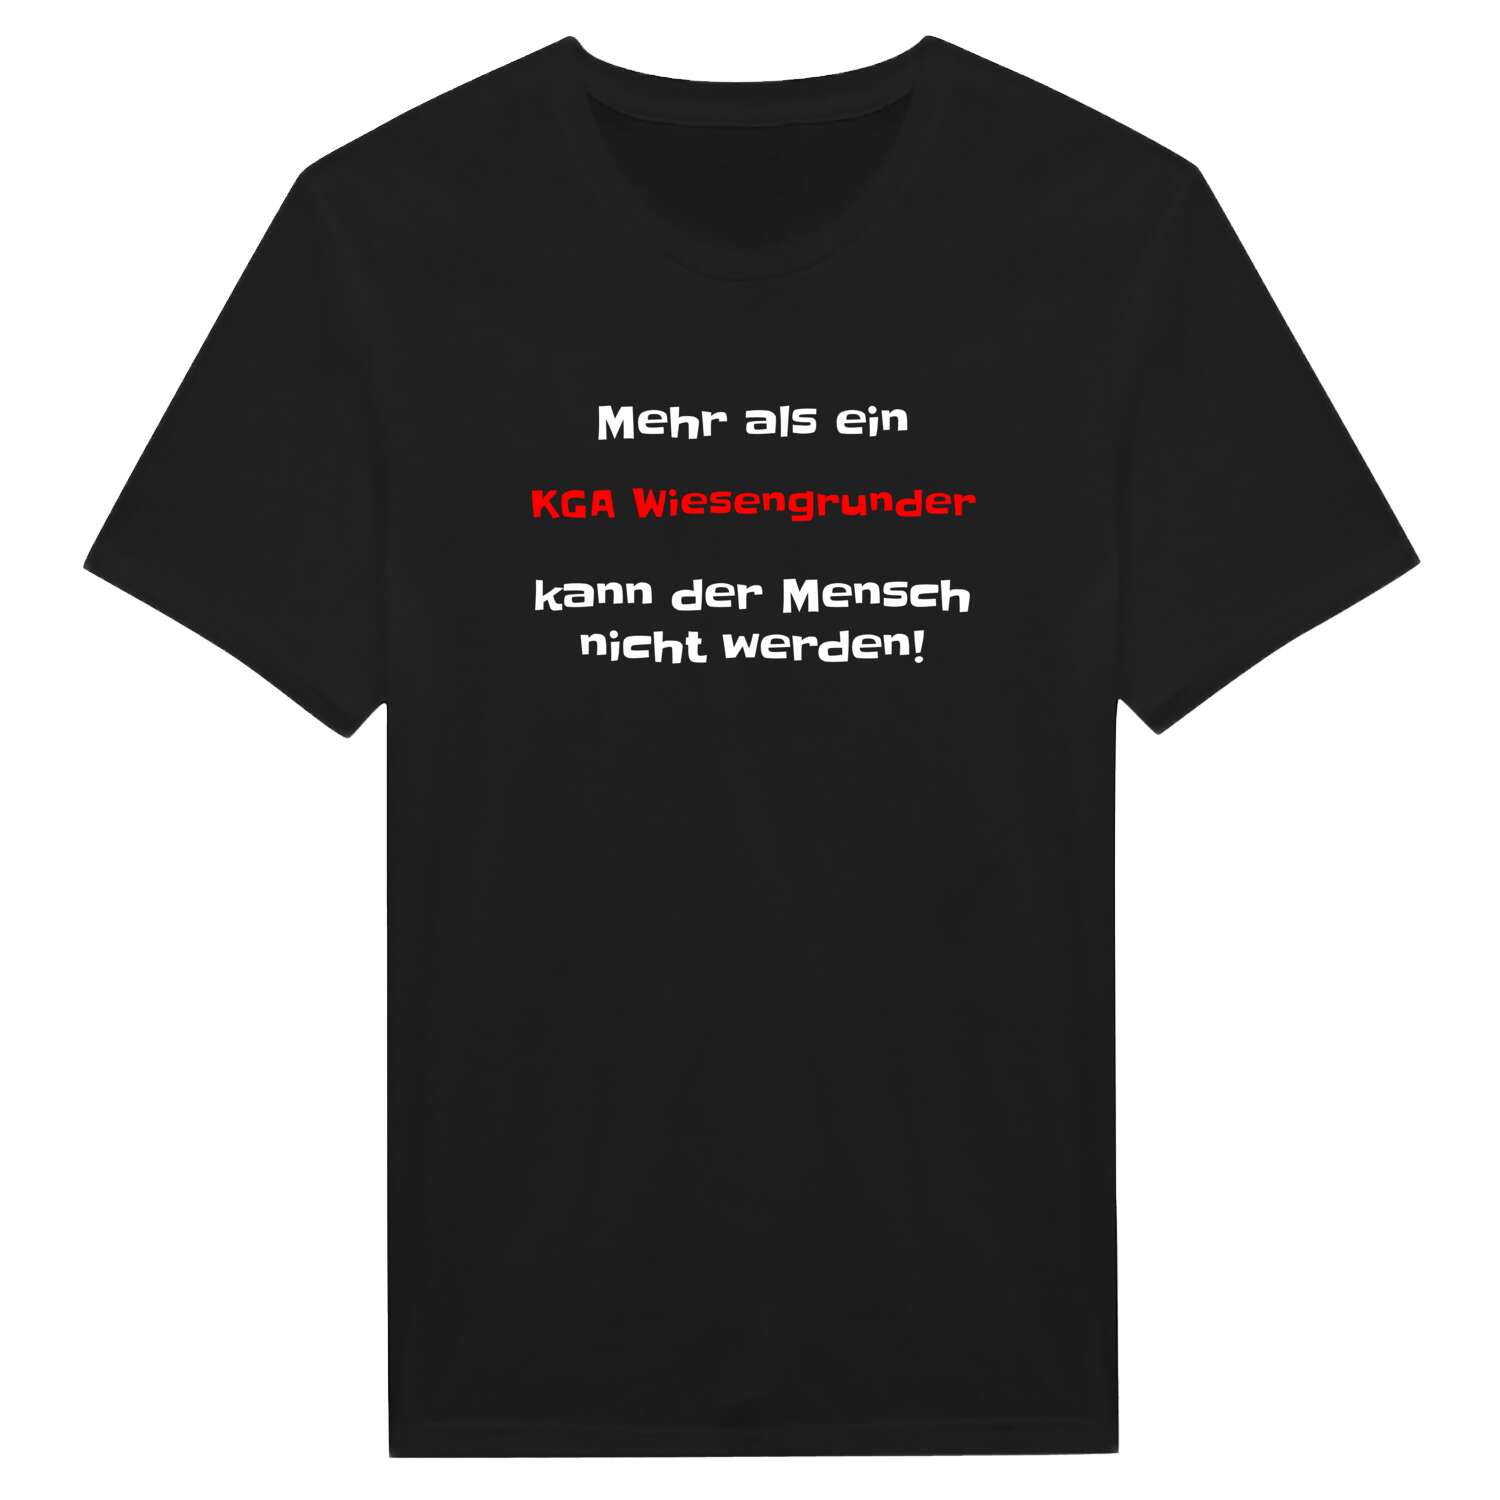 KGA Wiesengrund T-Shirt »Mehr als ein«